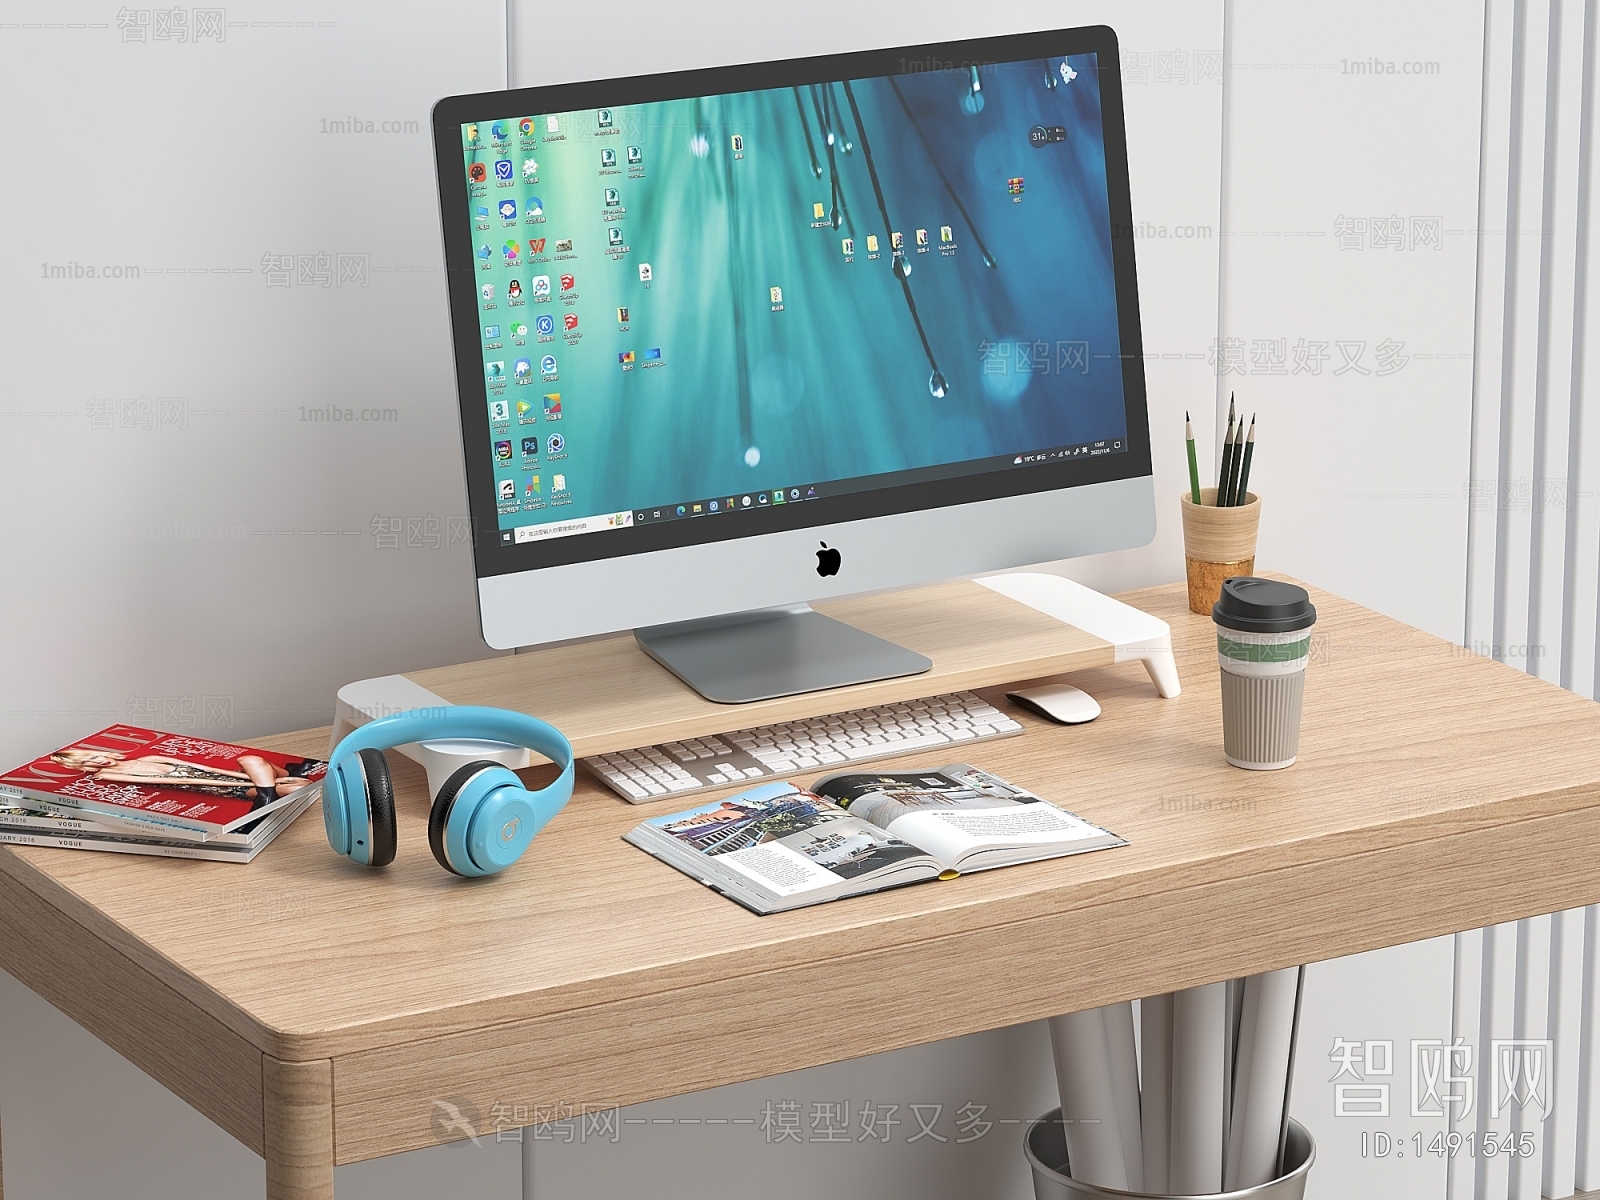 Modern Computer Desk